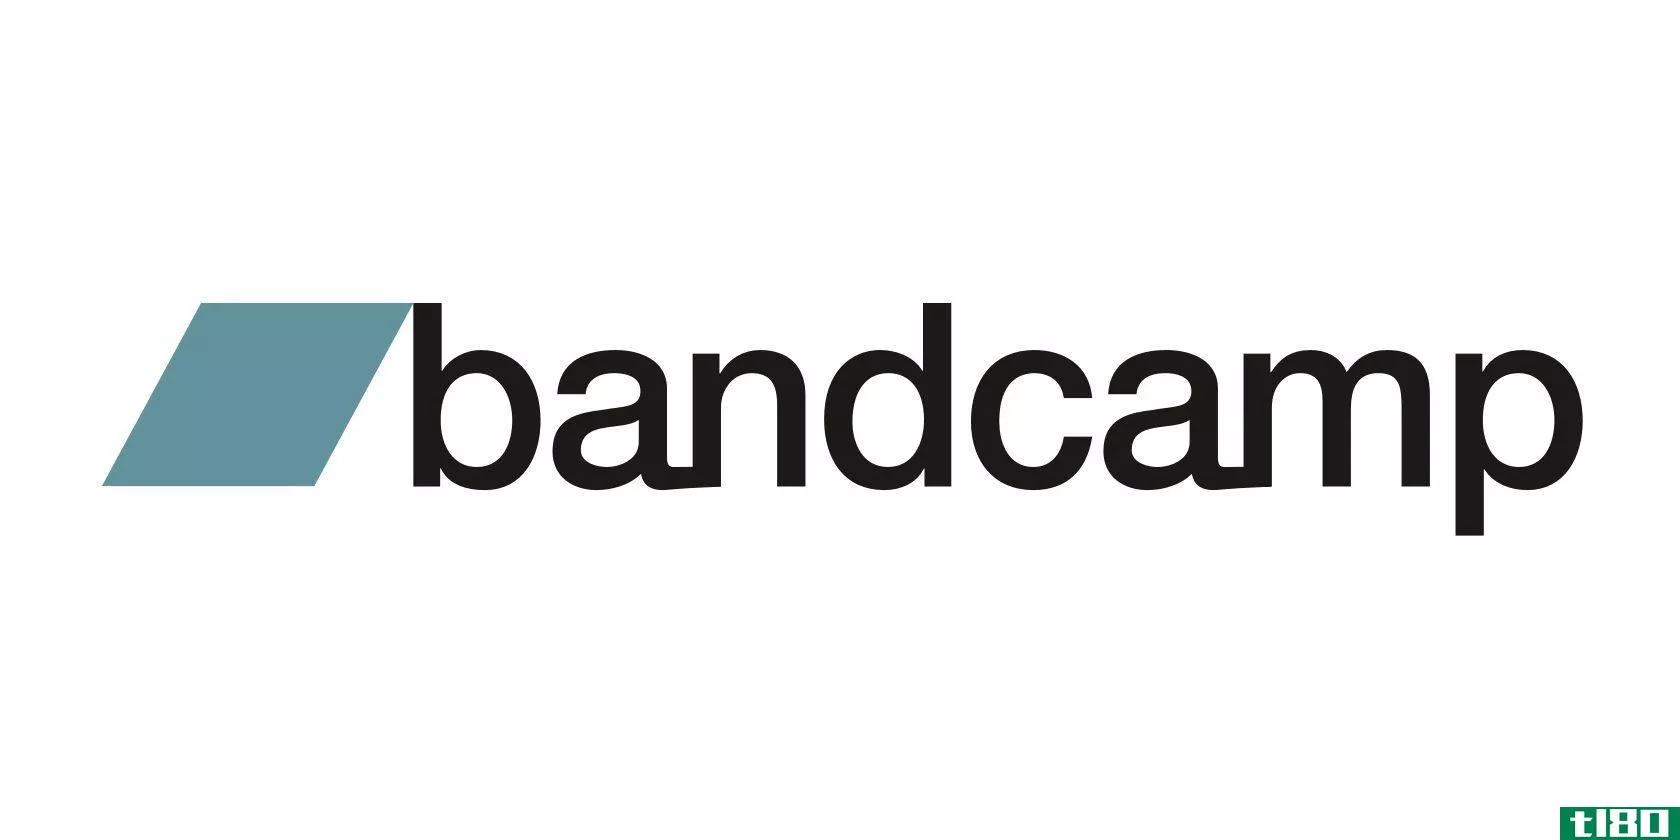 什么是bandcamp friday？它是如何工作的？